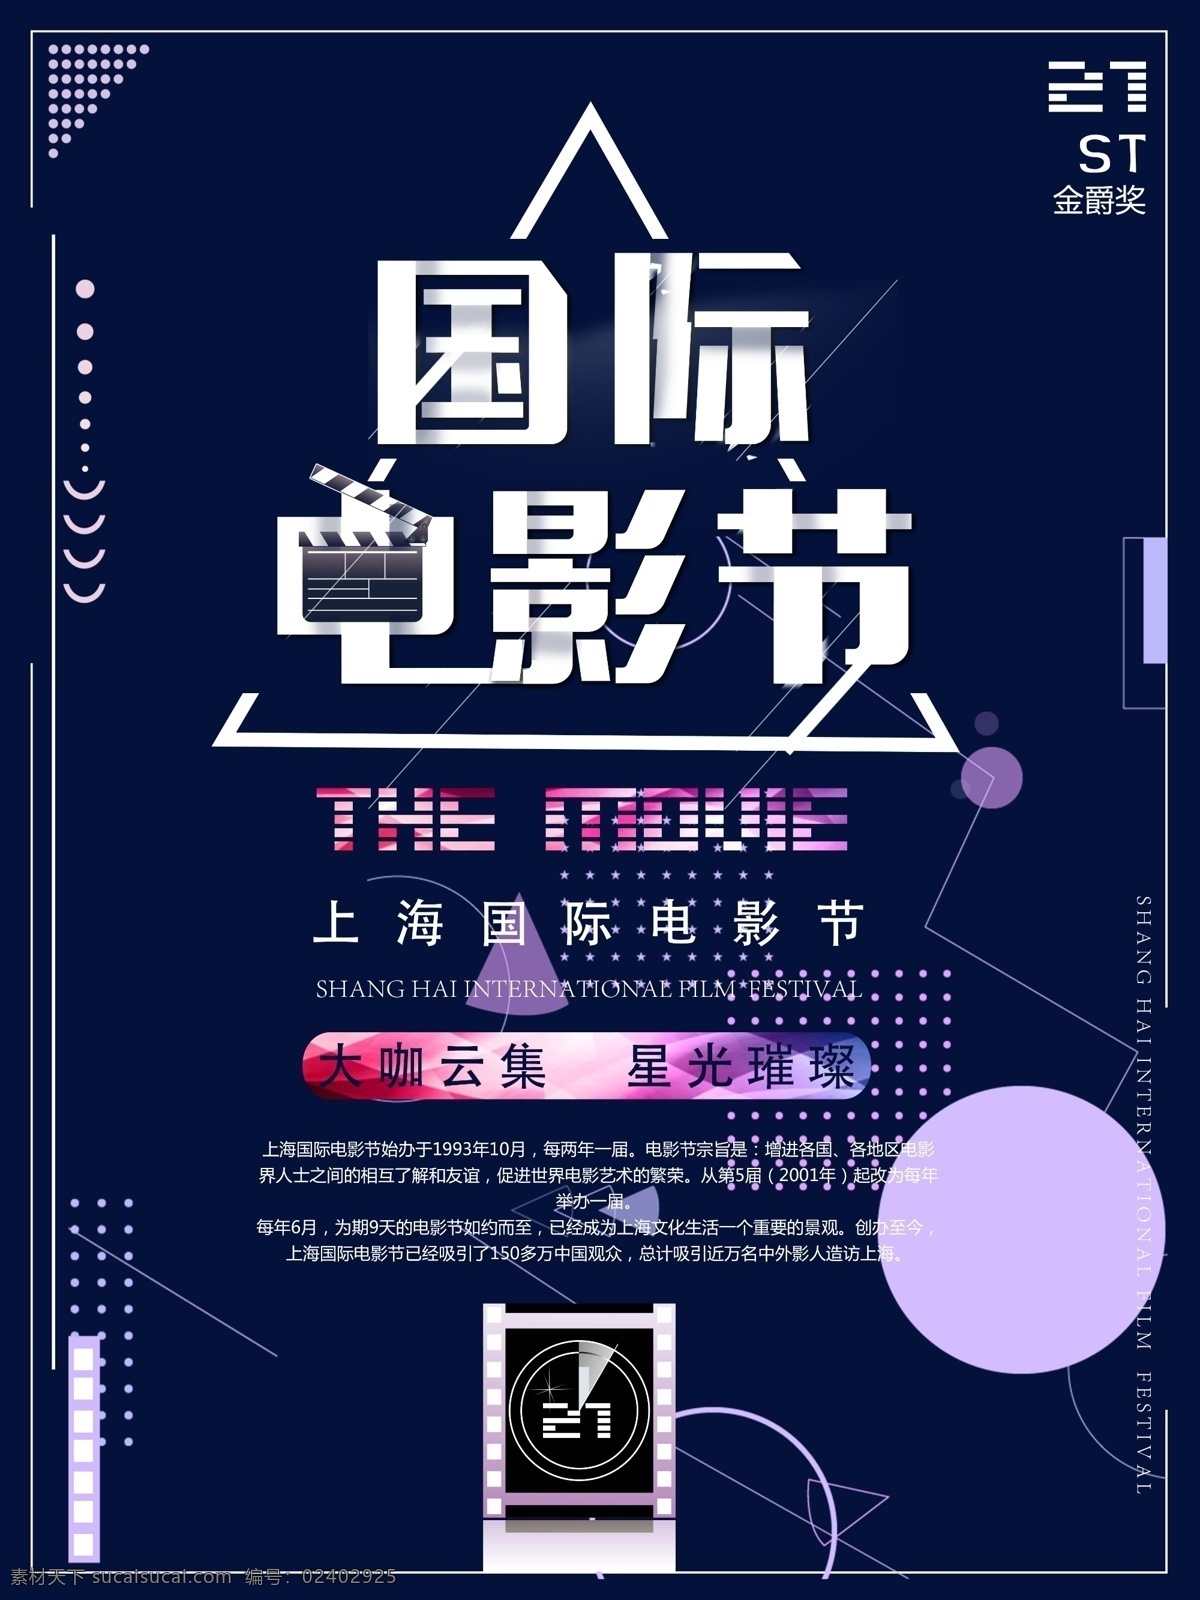 简约 大气 蓝色 上海 国际电影节 宣传海报 渐变 国际 海报 电影 影片 电影节 电影节海报